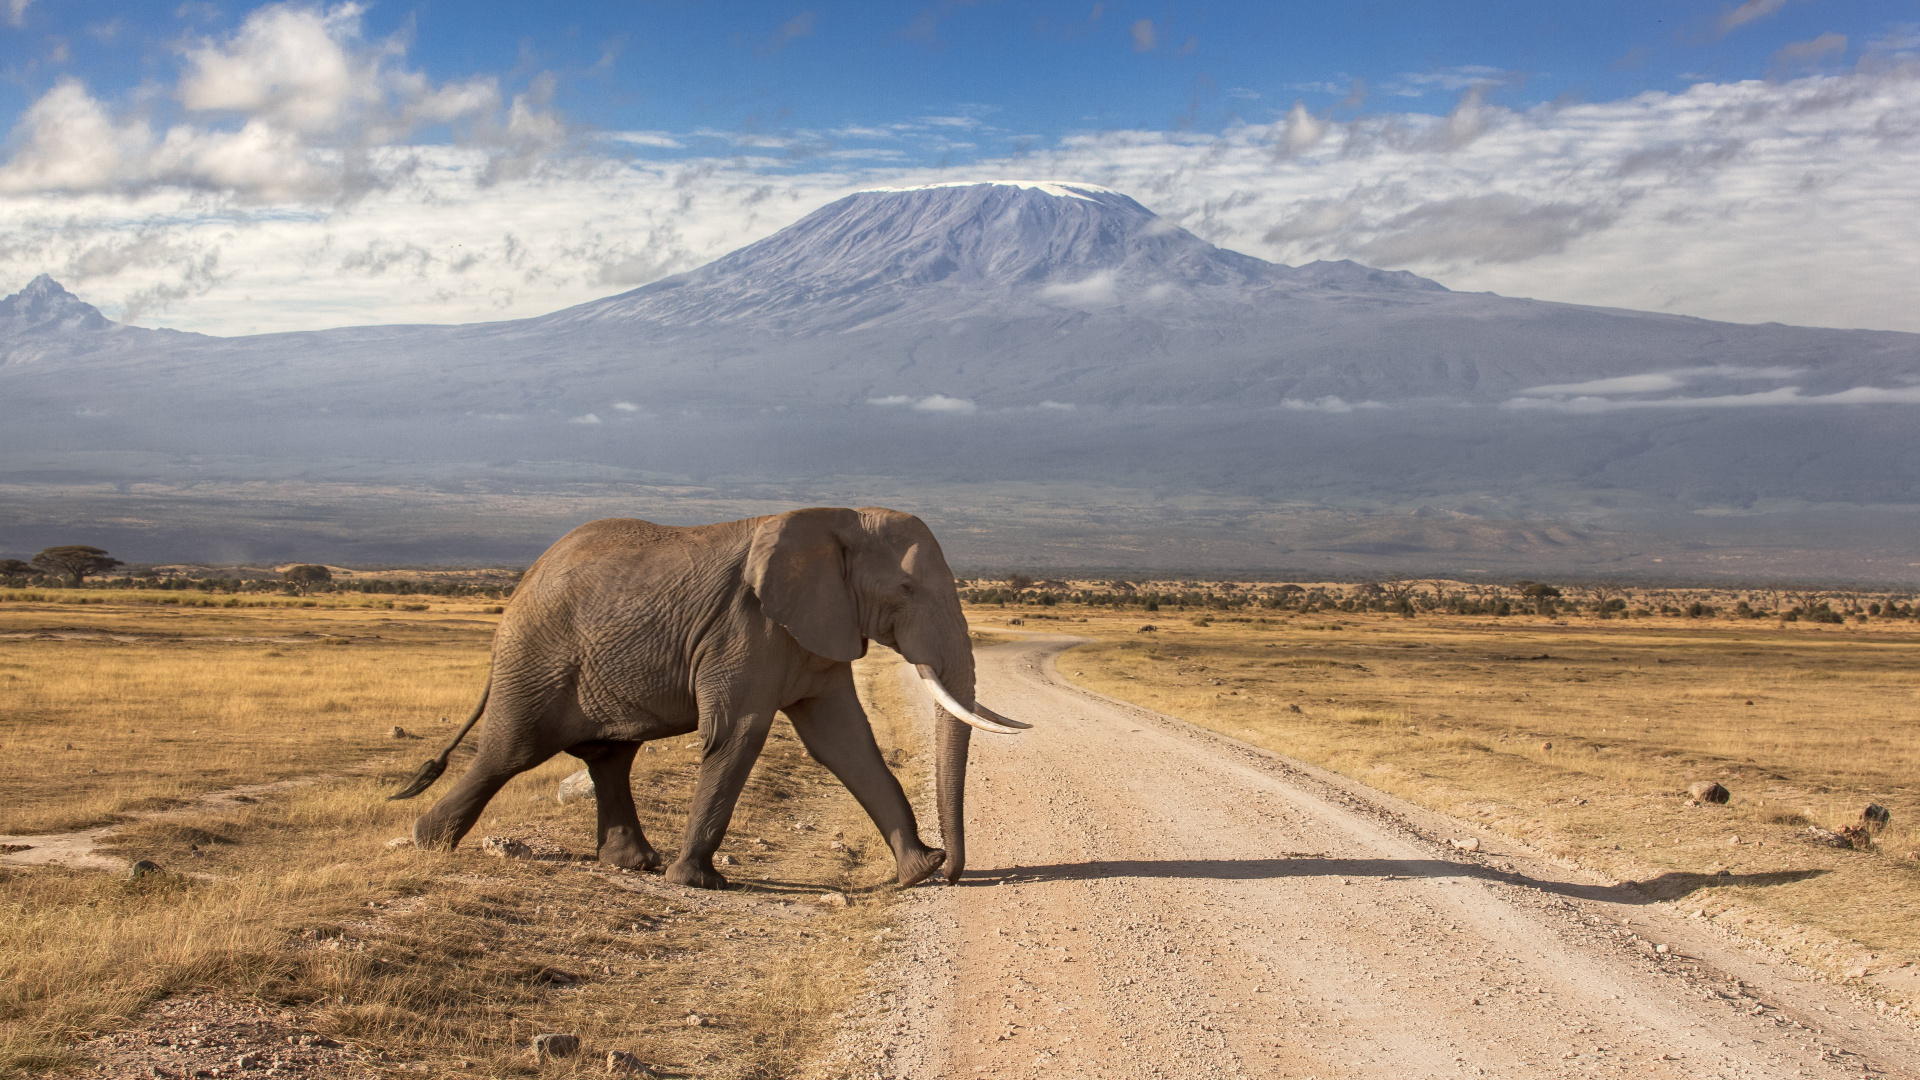 安博塞利国家公园, 马赛马拉, Safari, 大象和猛犸象, 野生动物 壁纸 1920x1080 允许